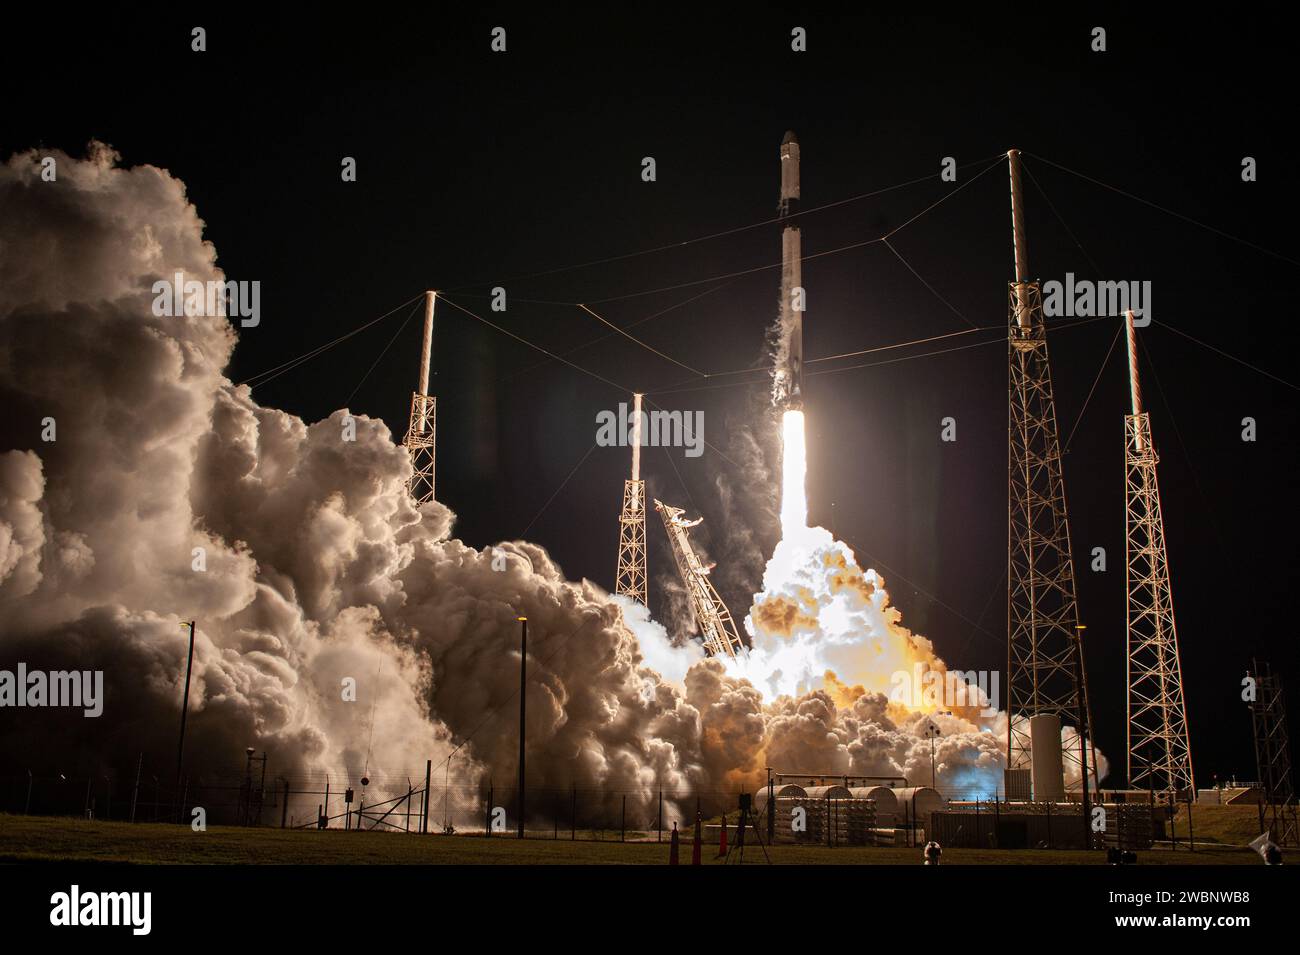 Une fusée SpaceX Falcon 9 décolle du Space Launch Complex 40 à la Cape Canaveral Air Force Station en Floride à 11:50 h HNE le 6 mars 2020, transportant le vaisseau spatial cargo Dragon sans équipage lors de son voyage vers la Station spatiale internationale pour la NASA et la mission 20th commercial Resupply Services (CRS-20) de SpaceX. Dragon livrera plus de 4 300 livres de recherches scientifiques et de cargaison au laboratoire en orbite. Banque D'Images